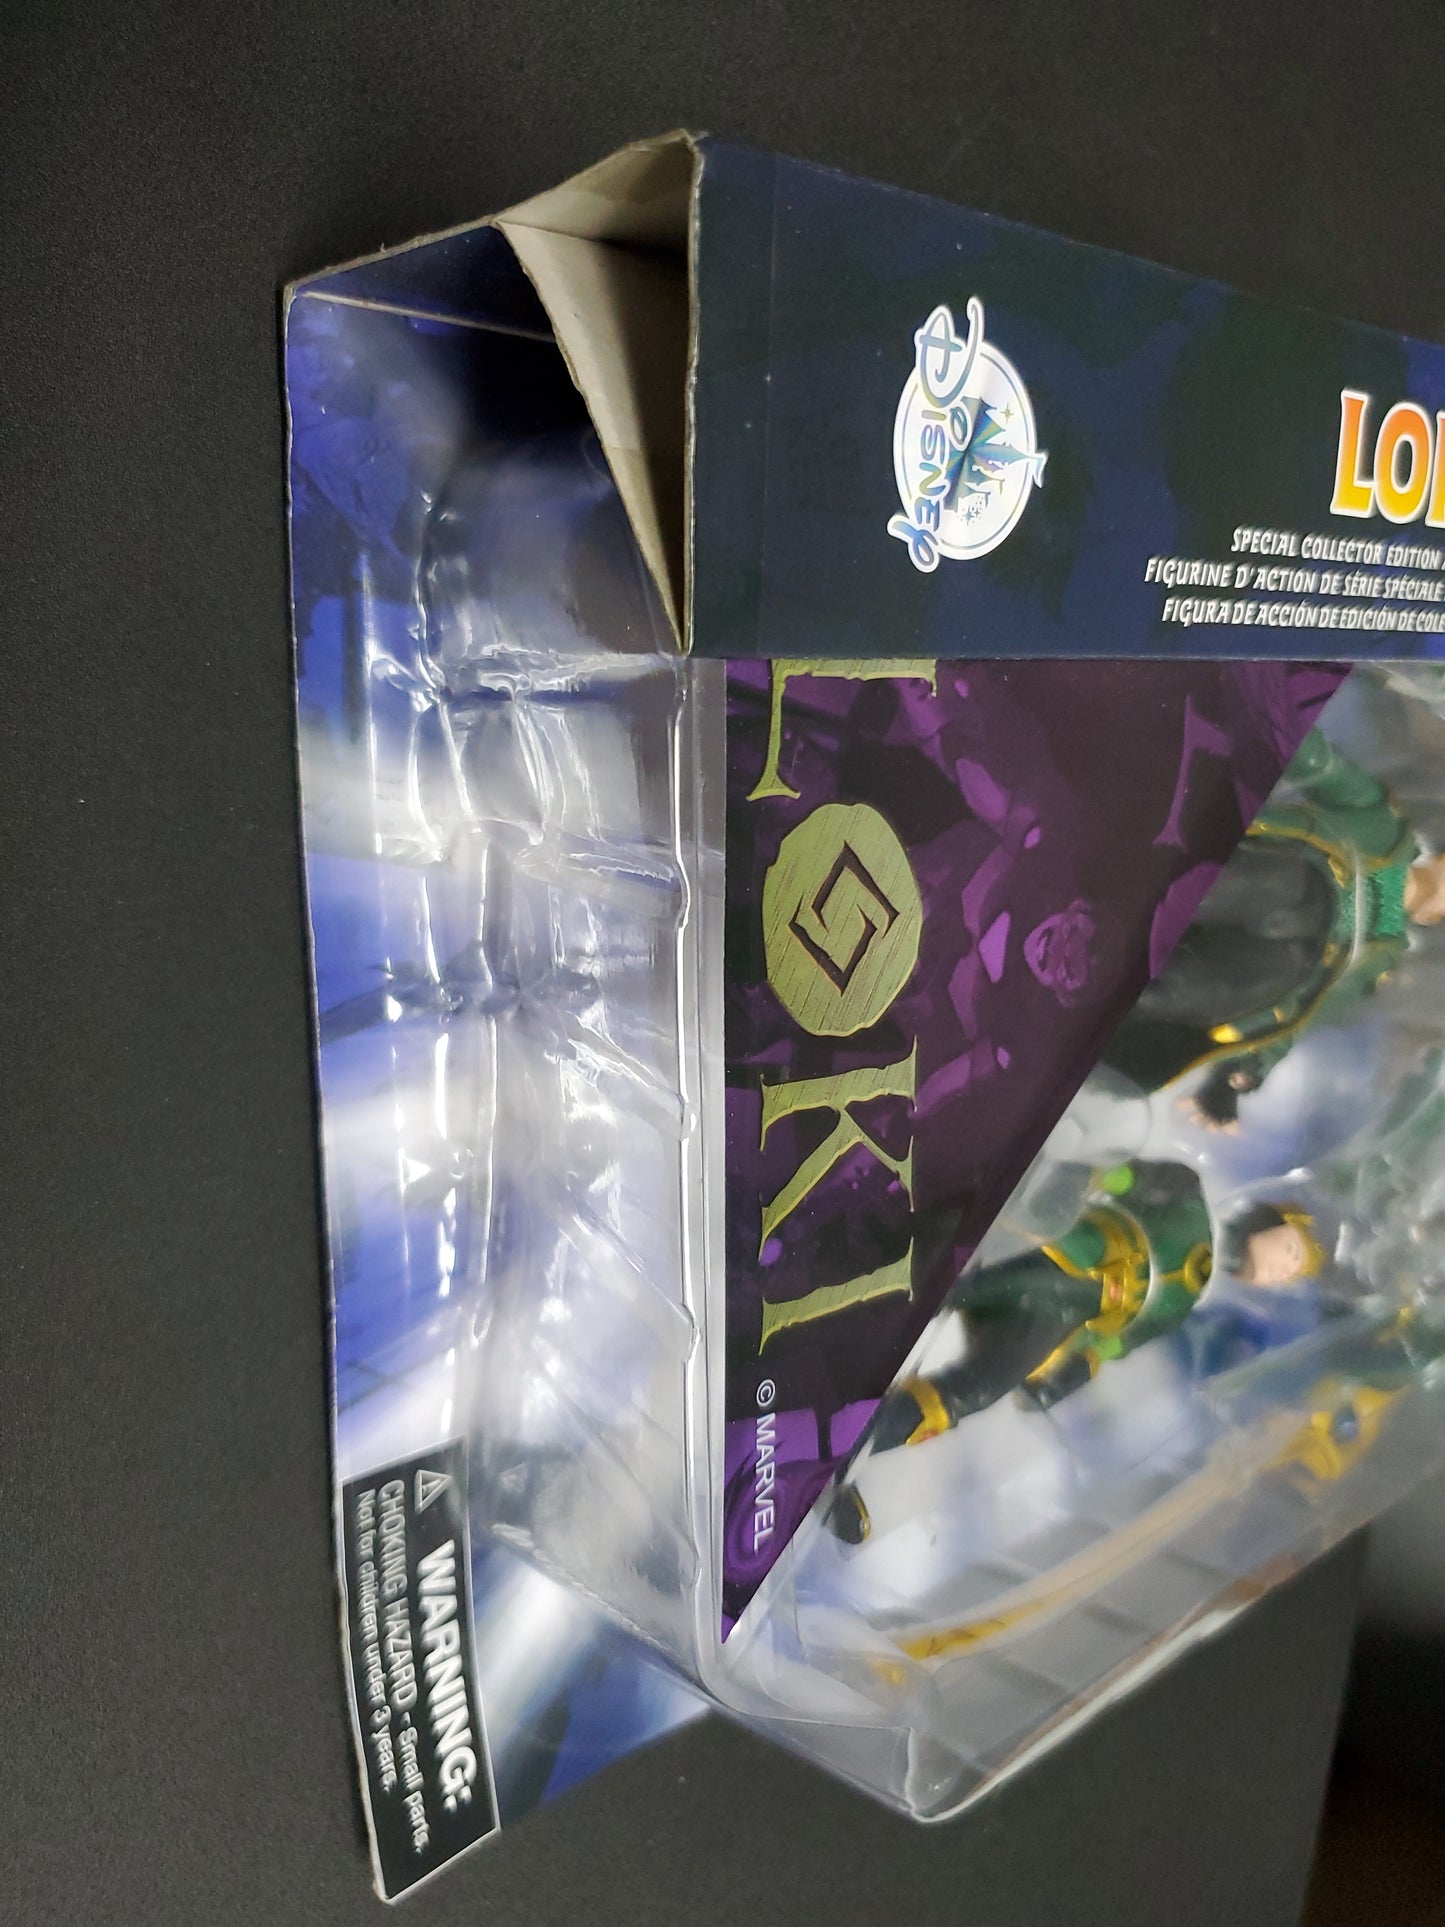 Marvel Select: Loki Diamond Action Figure